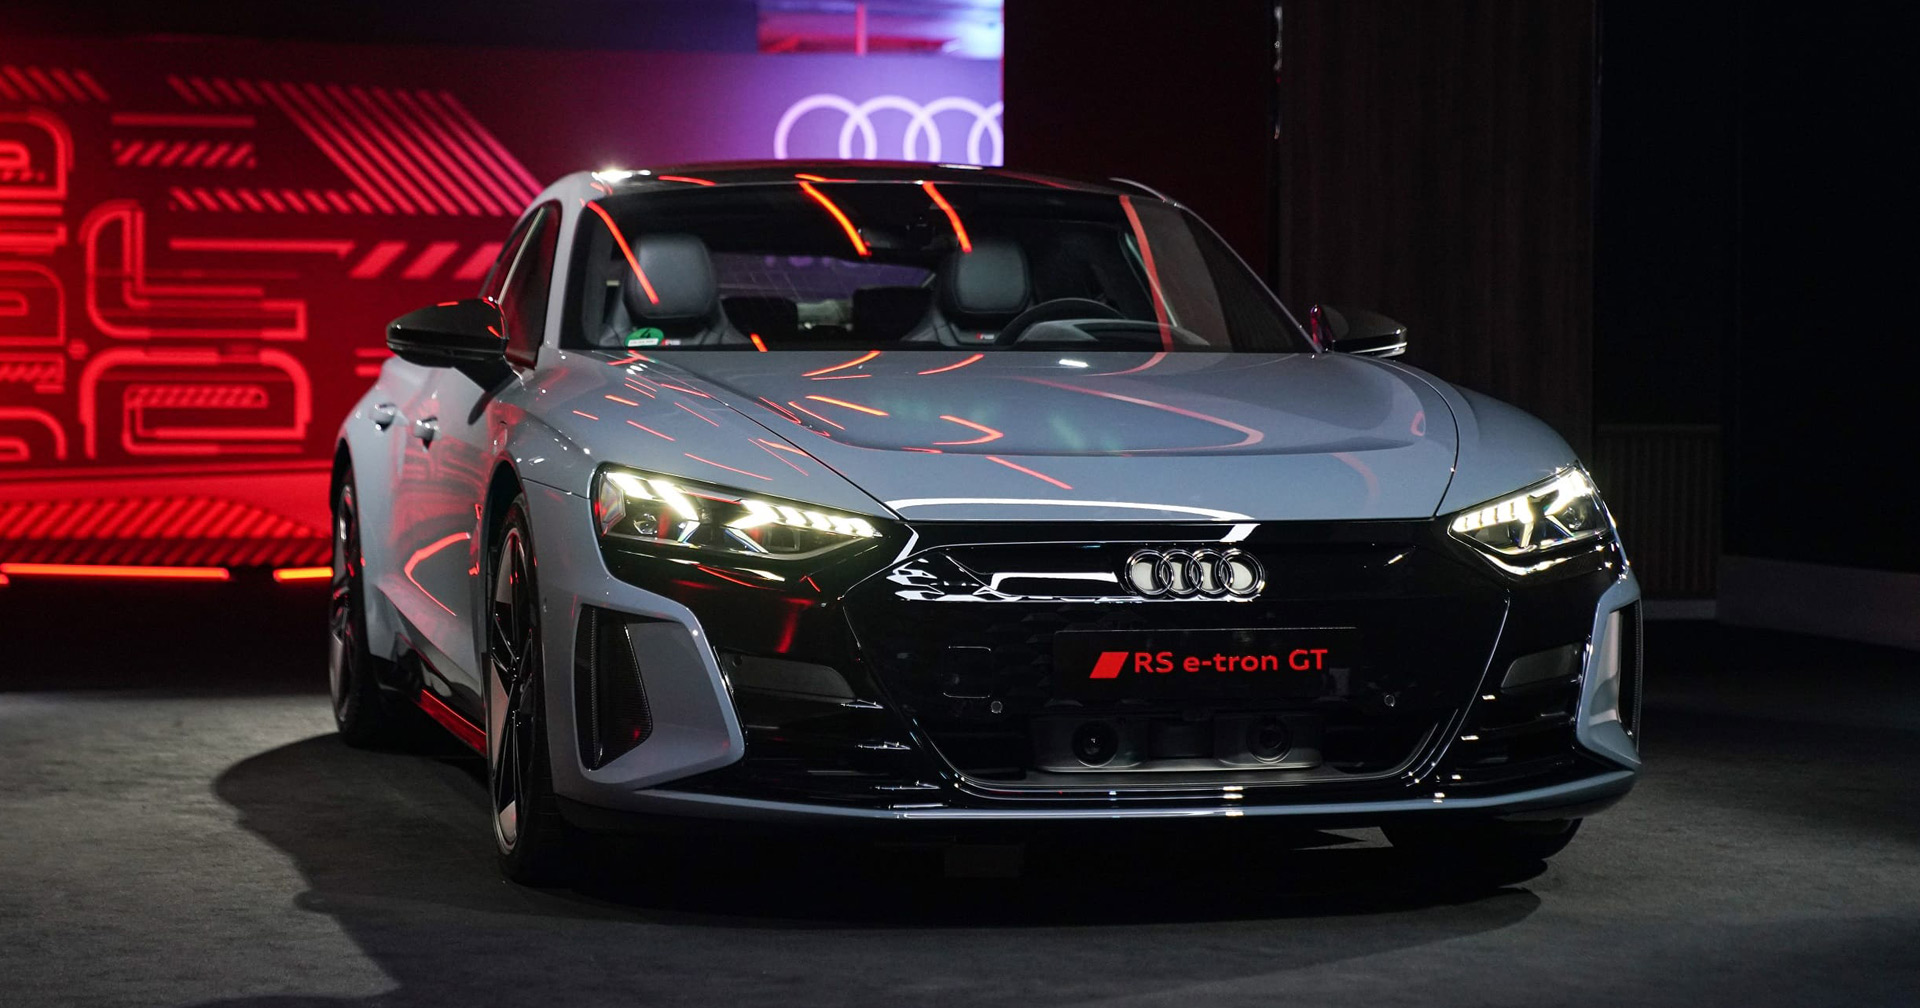 เปิดตัว Audi e-tron GT ครั้งแรกในเอเชีย เคาะราคา 6.39-9.49 ล้านบาท